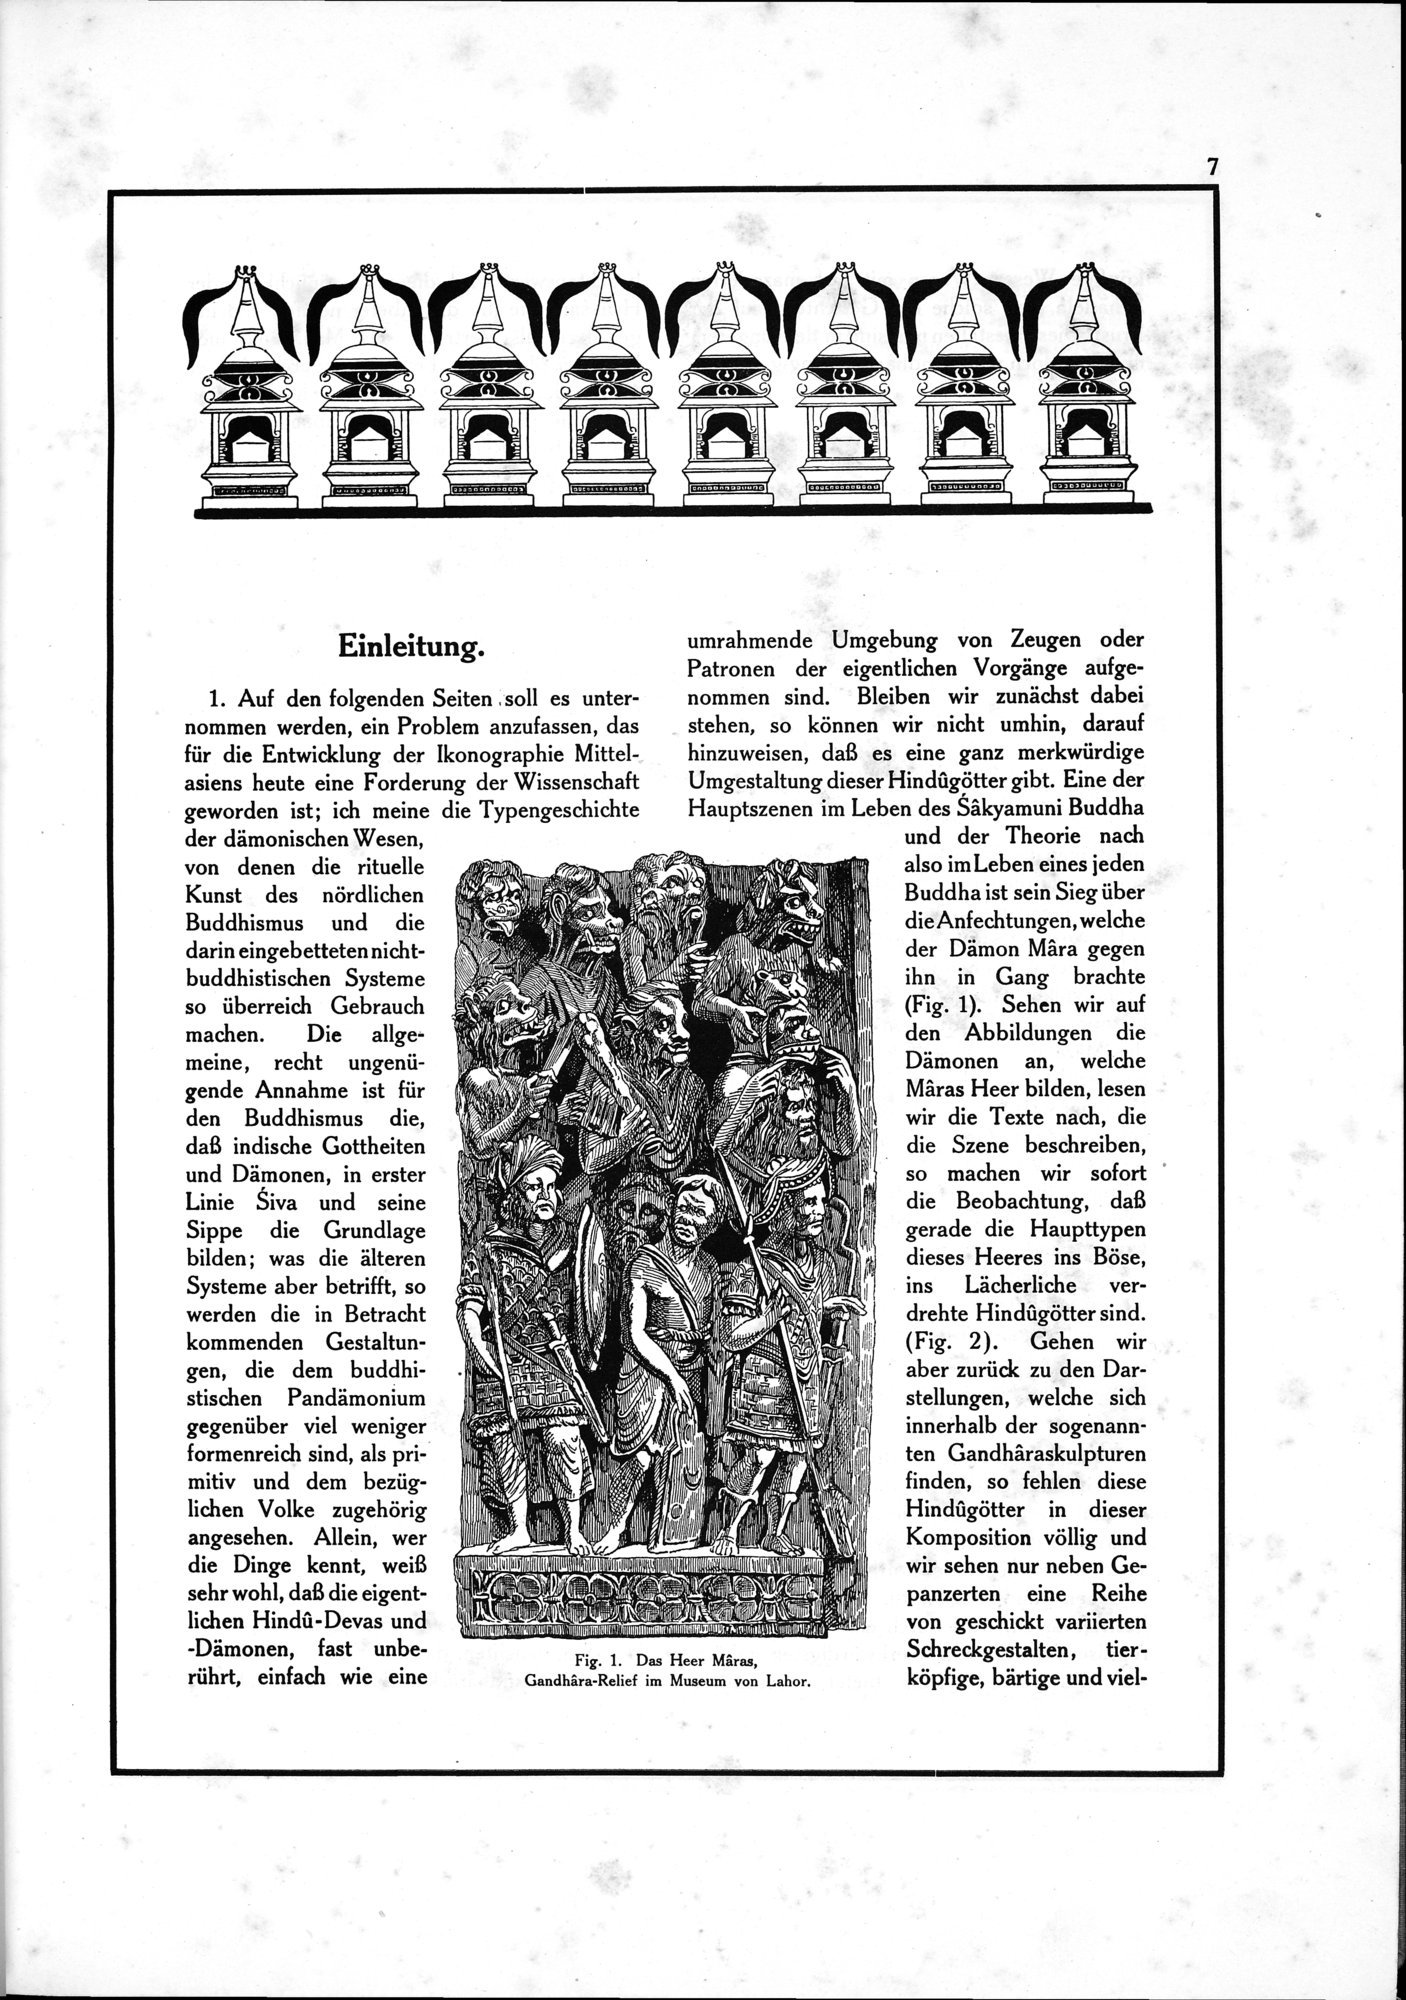 Die Teufel des Avesta und Ihre Beziehungen zur Ikonographie des Buddhismus Zentral-Asiens : vol.1 / Page 11 (Grayscale High Resolution Image)